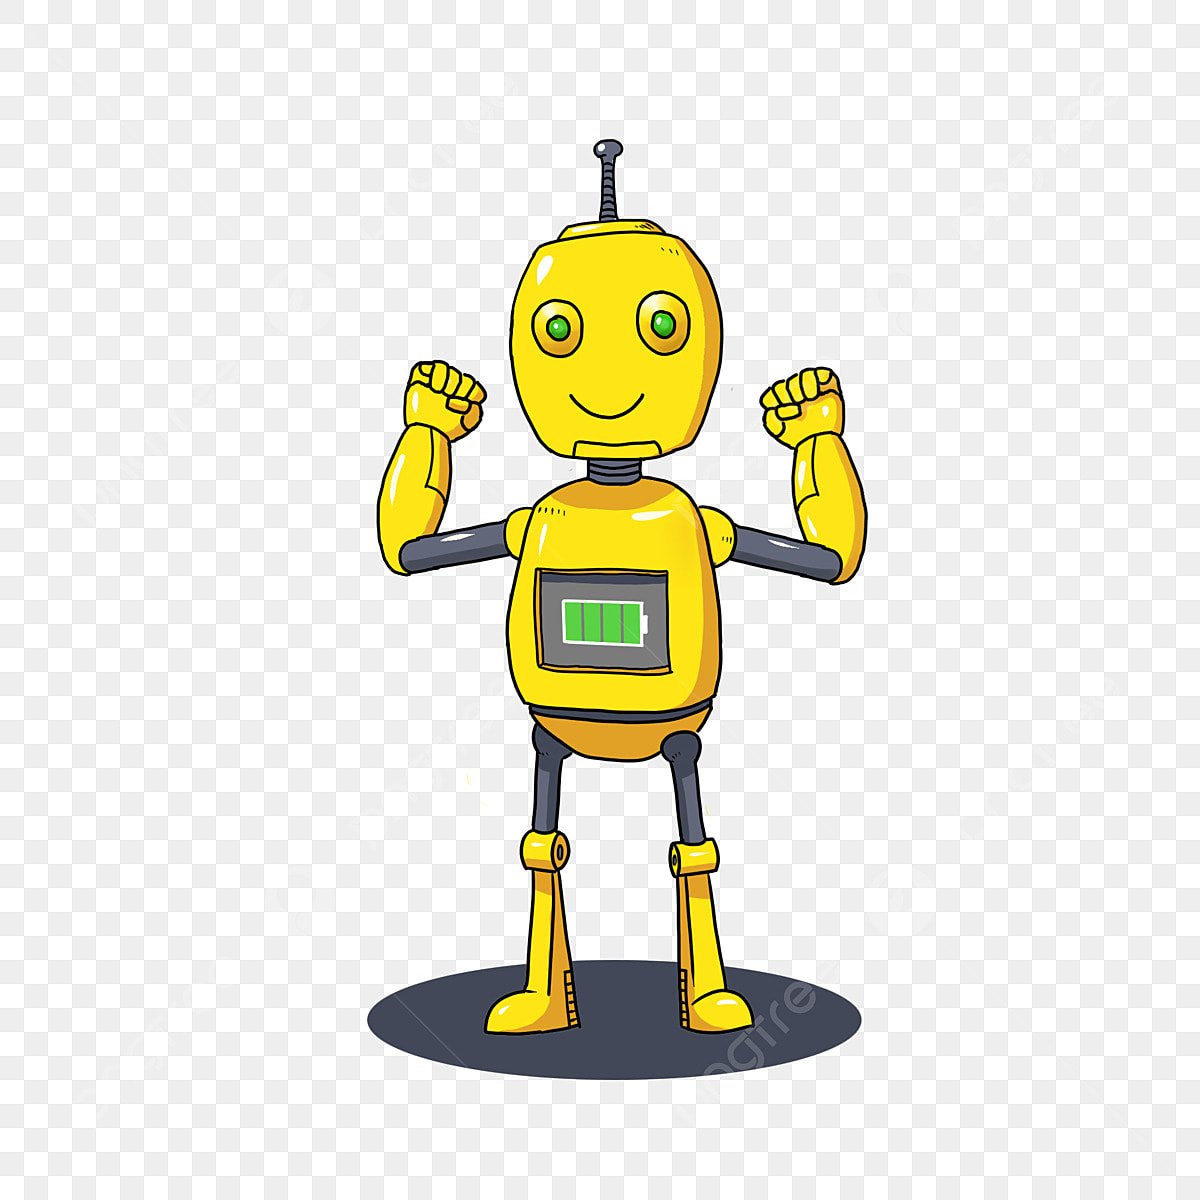 Малыш в желтом робот. Желтый робот. Робот желтый робот. Робот на желтом фоне. Робот ребенок в желтом.